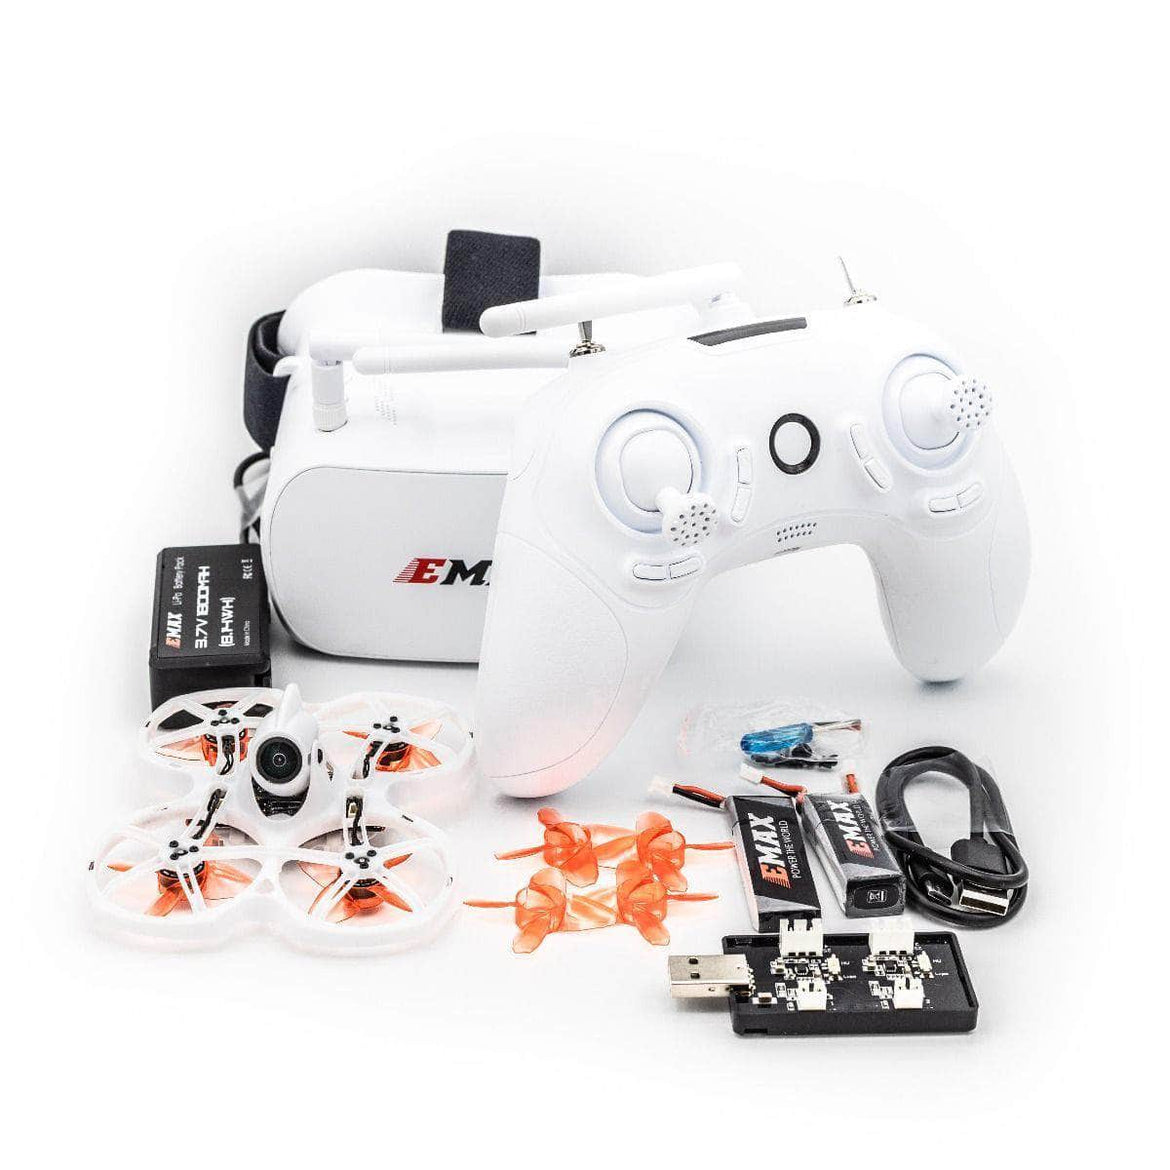 Runcam 5 Action Cam 4K – Drone24Hours